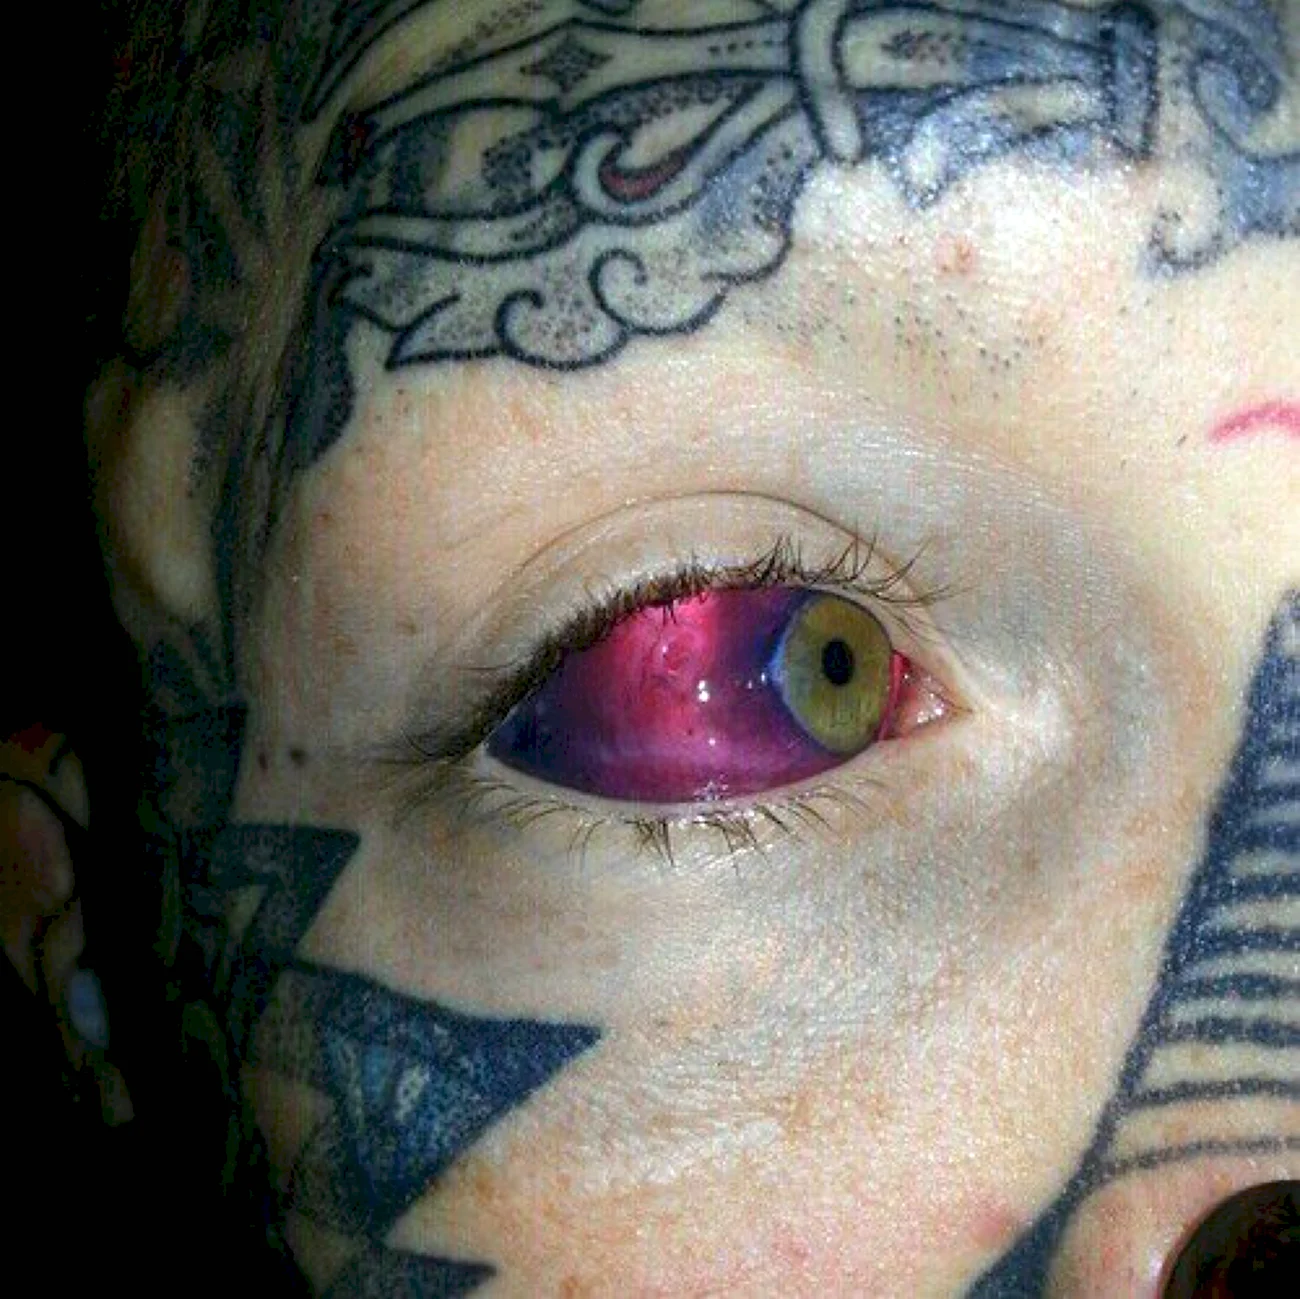 Татуировки на белках глаз. Картинка